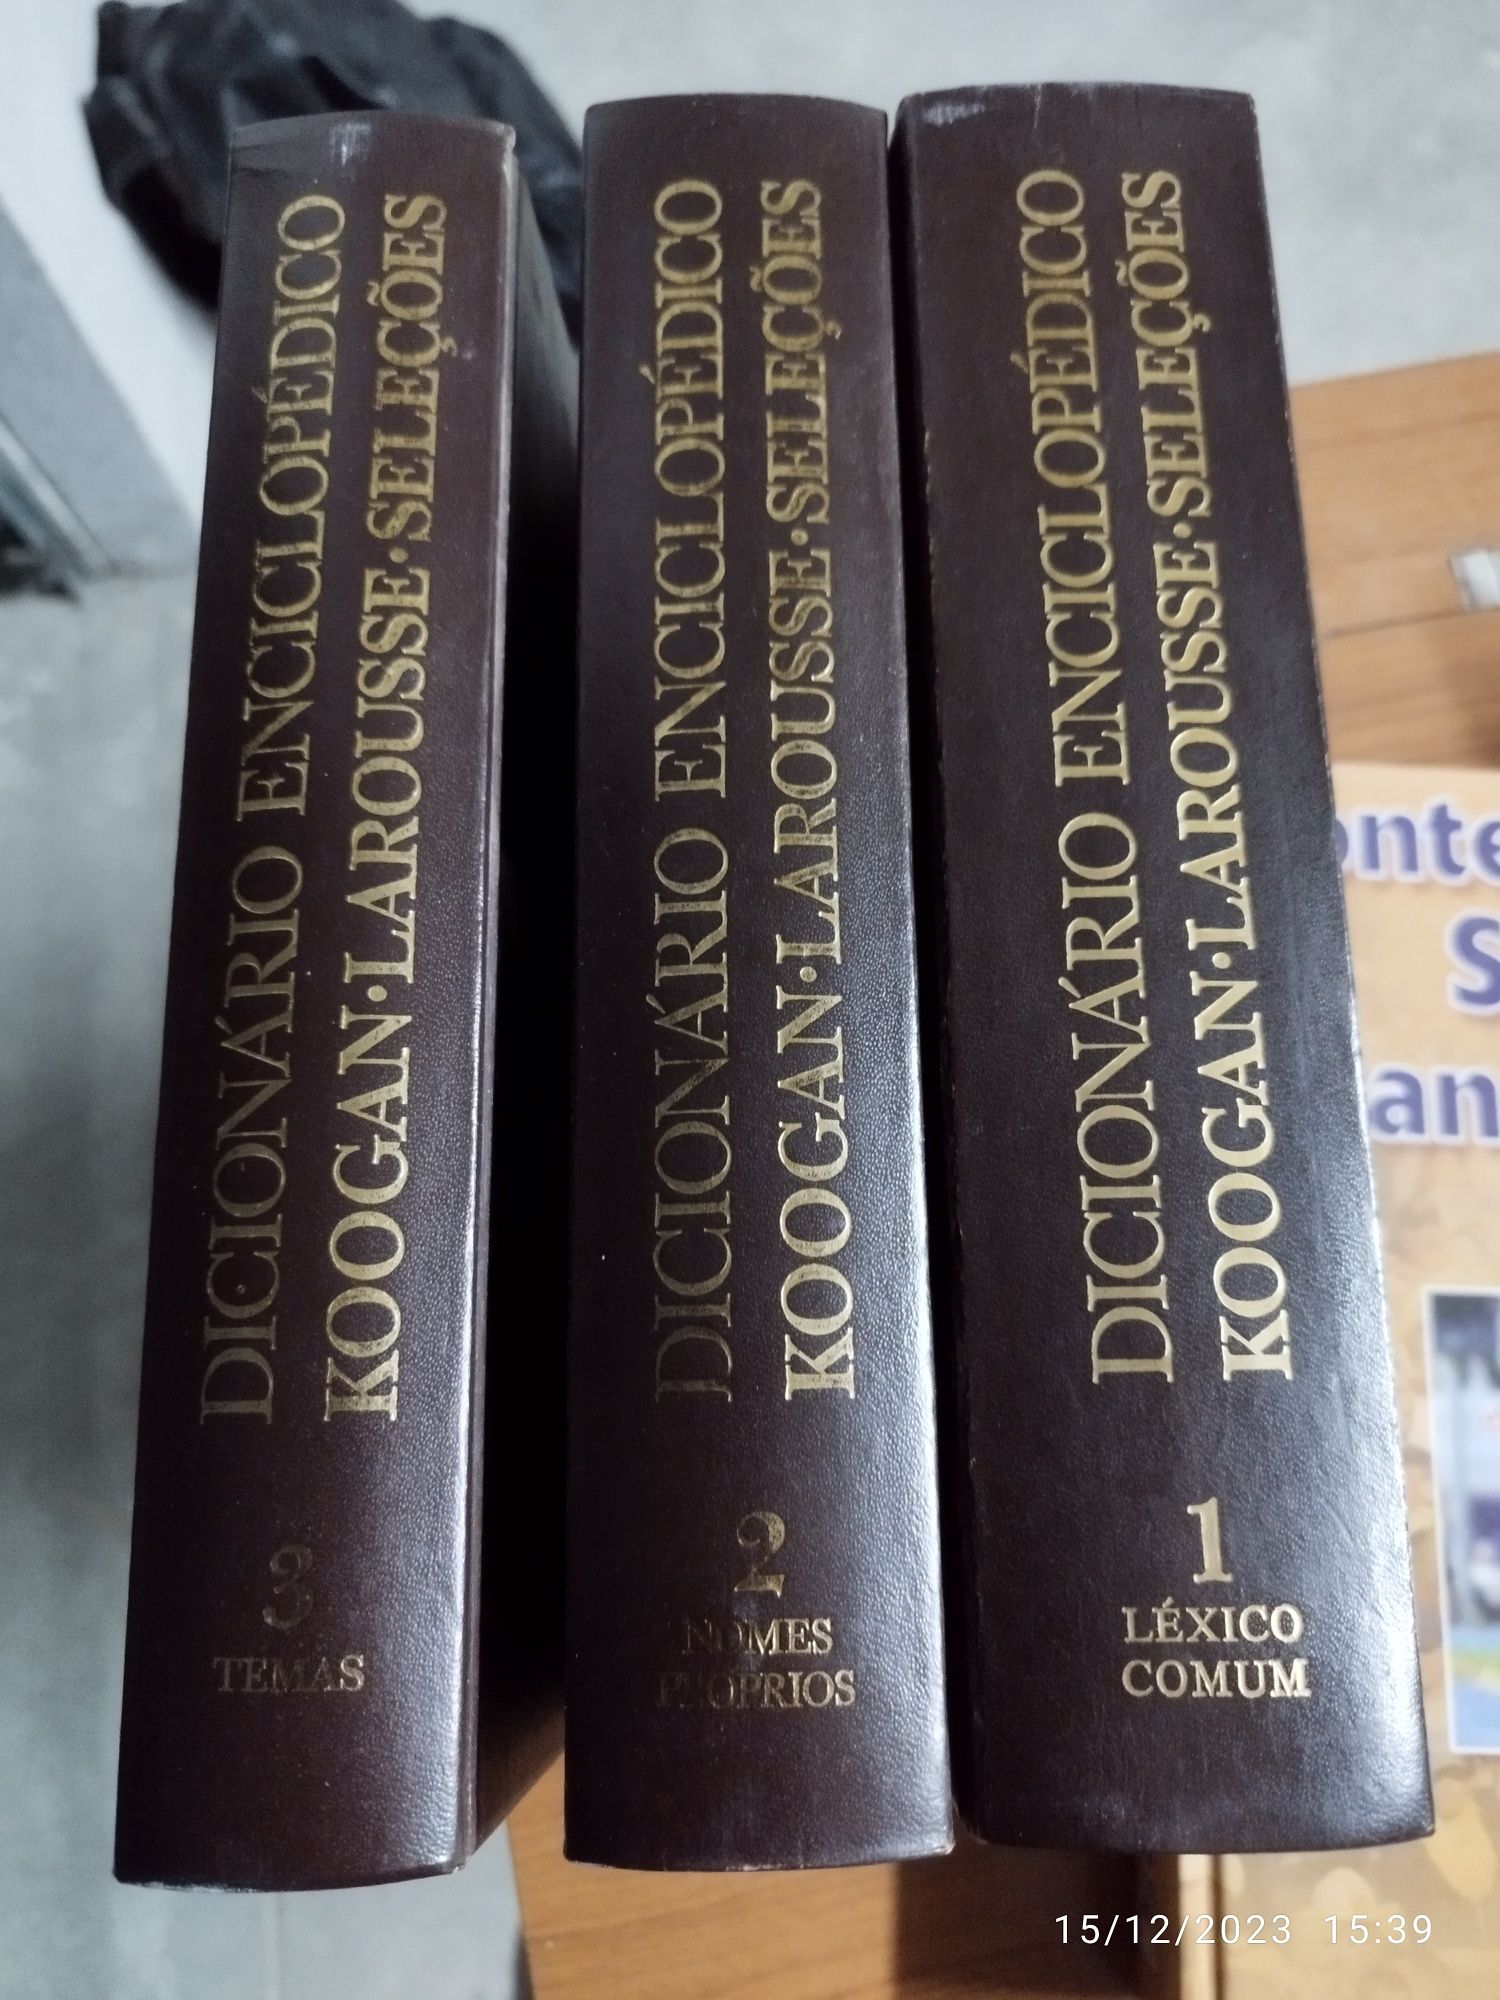 Dicionário enciclopédico koogan Larousse, seleções